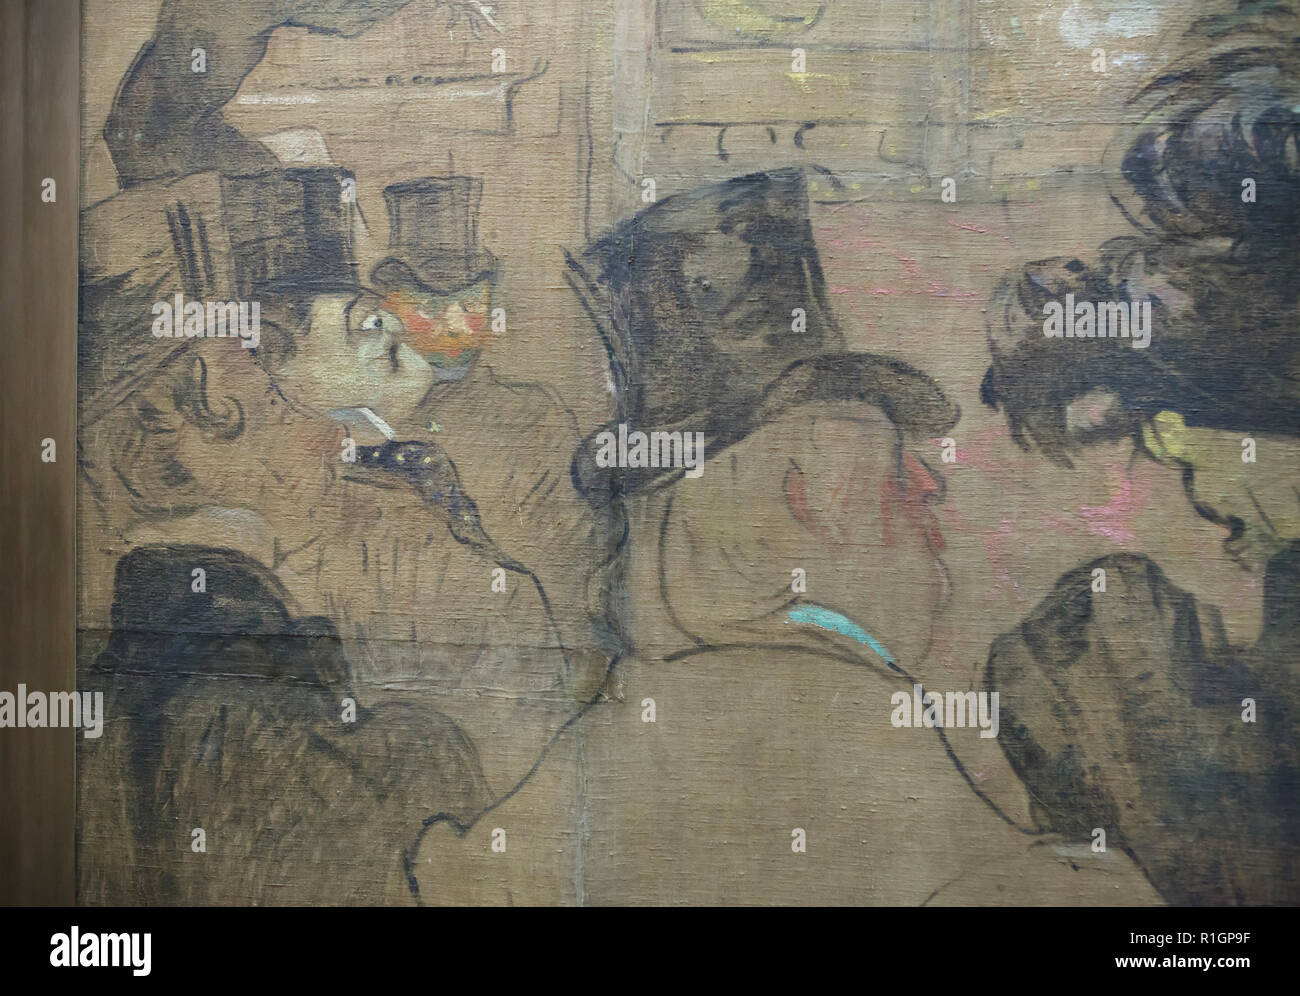 Novelista y poeta irlandés Oscar Wilde representado en la pintura 'Booth de la Goulue en la Foire du Trône' ('Los Moriscos Dance') por el artista postimpresionista francés Henri de Toulouse-Lautrec (1895) en la pantalla en el Musée d'Orsay en París, Francia. Foto de stock